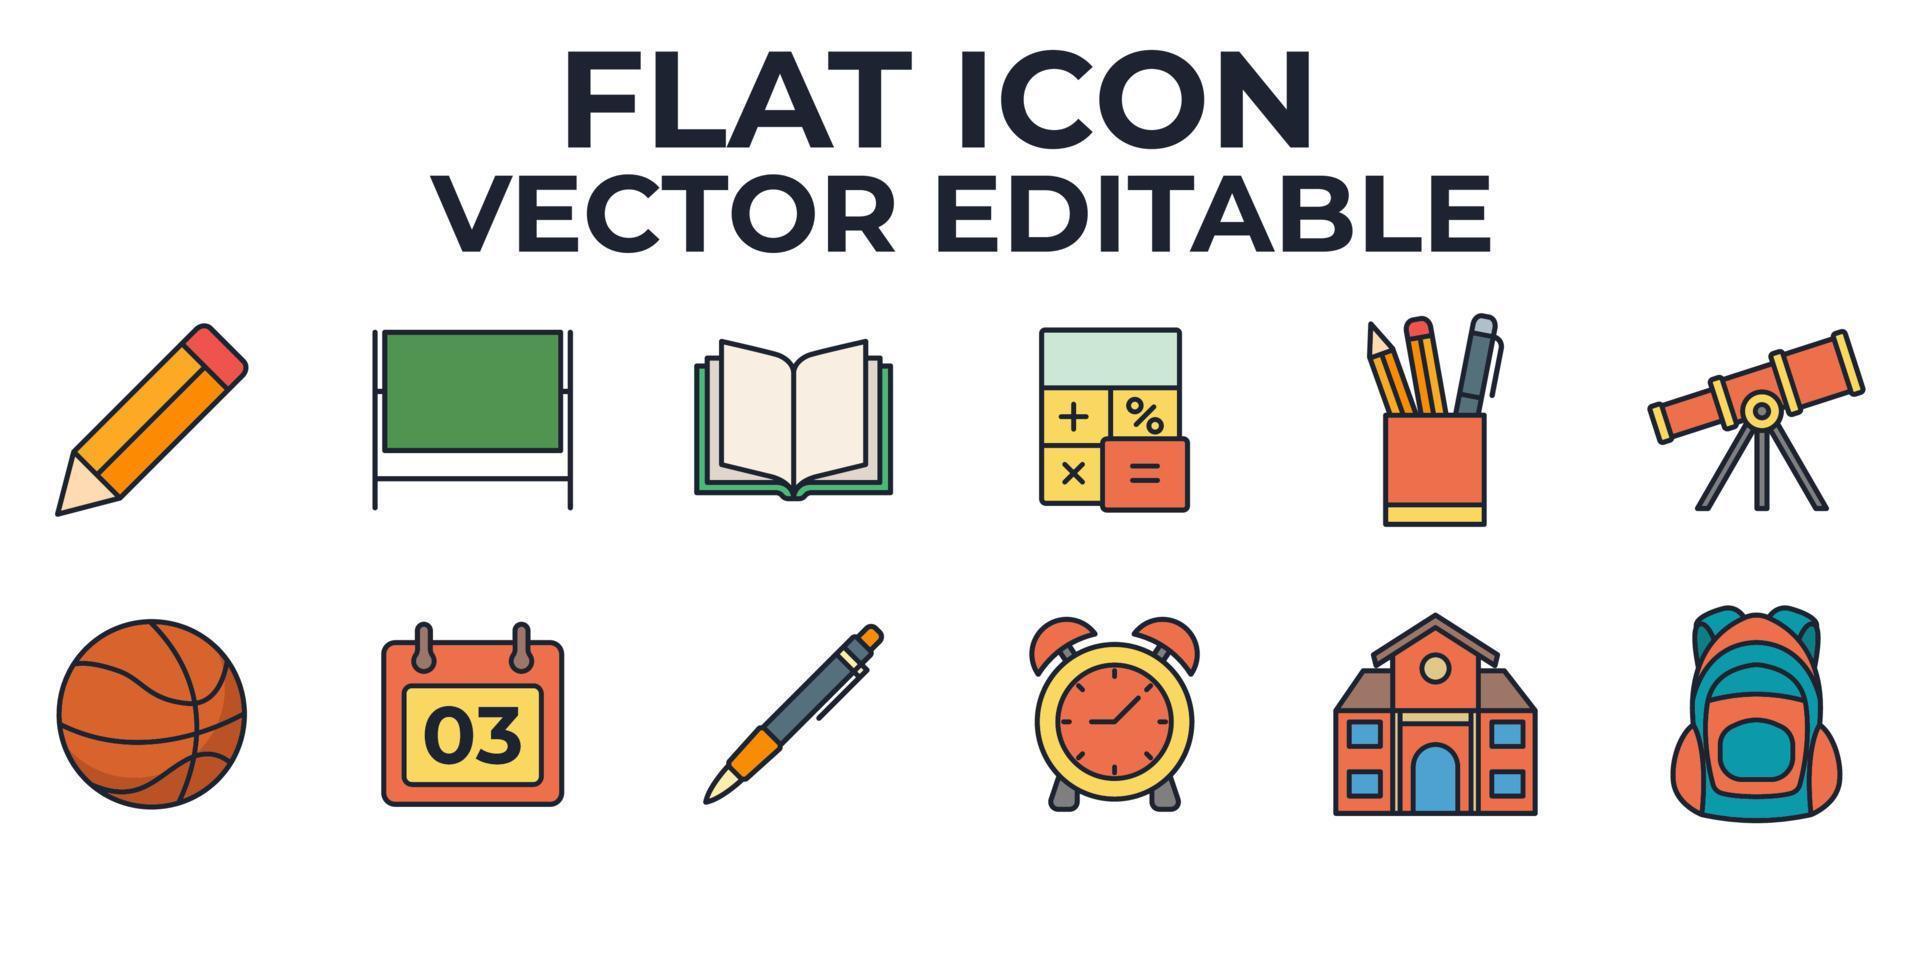 Bildungsset-Symbol-Symbolvorlage für Grafik- und Webdesign-Sammlung Logo-Vektor-Illustration vektor